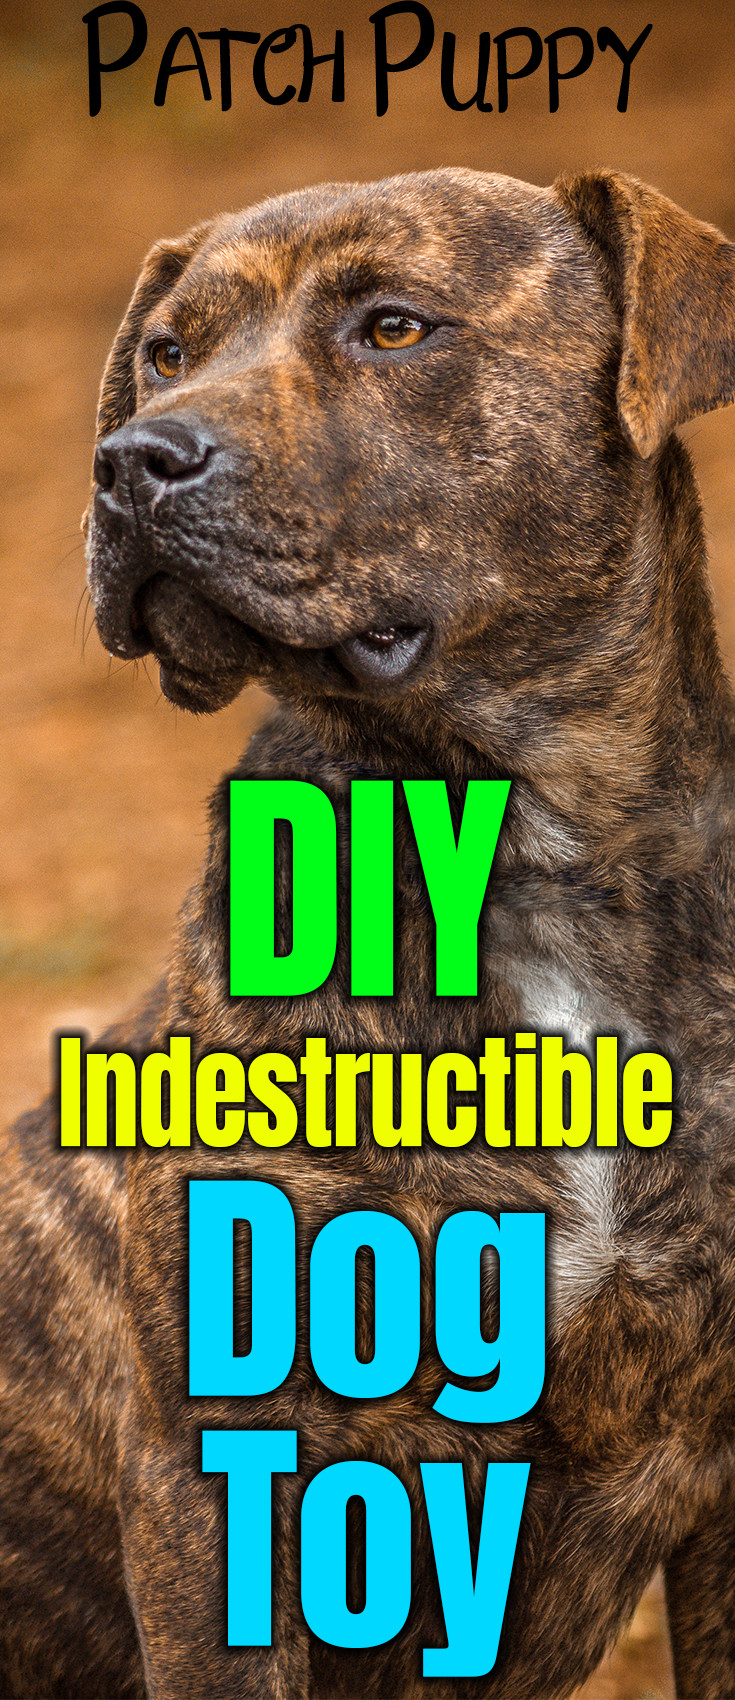 DIY Indestructible Dog Toy
 Sweet Potato Dog Treats on a Rope DIY Indestructible Dog